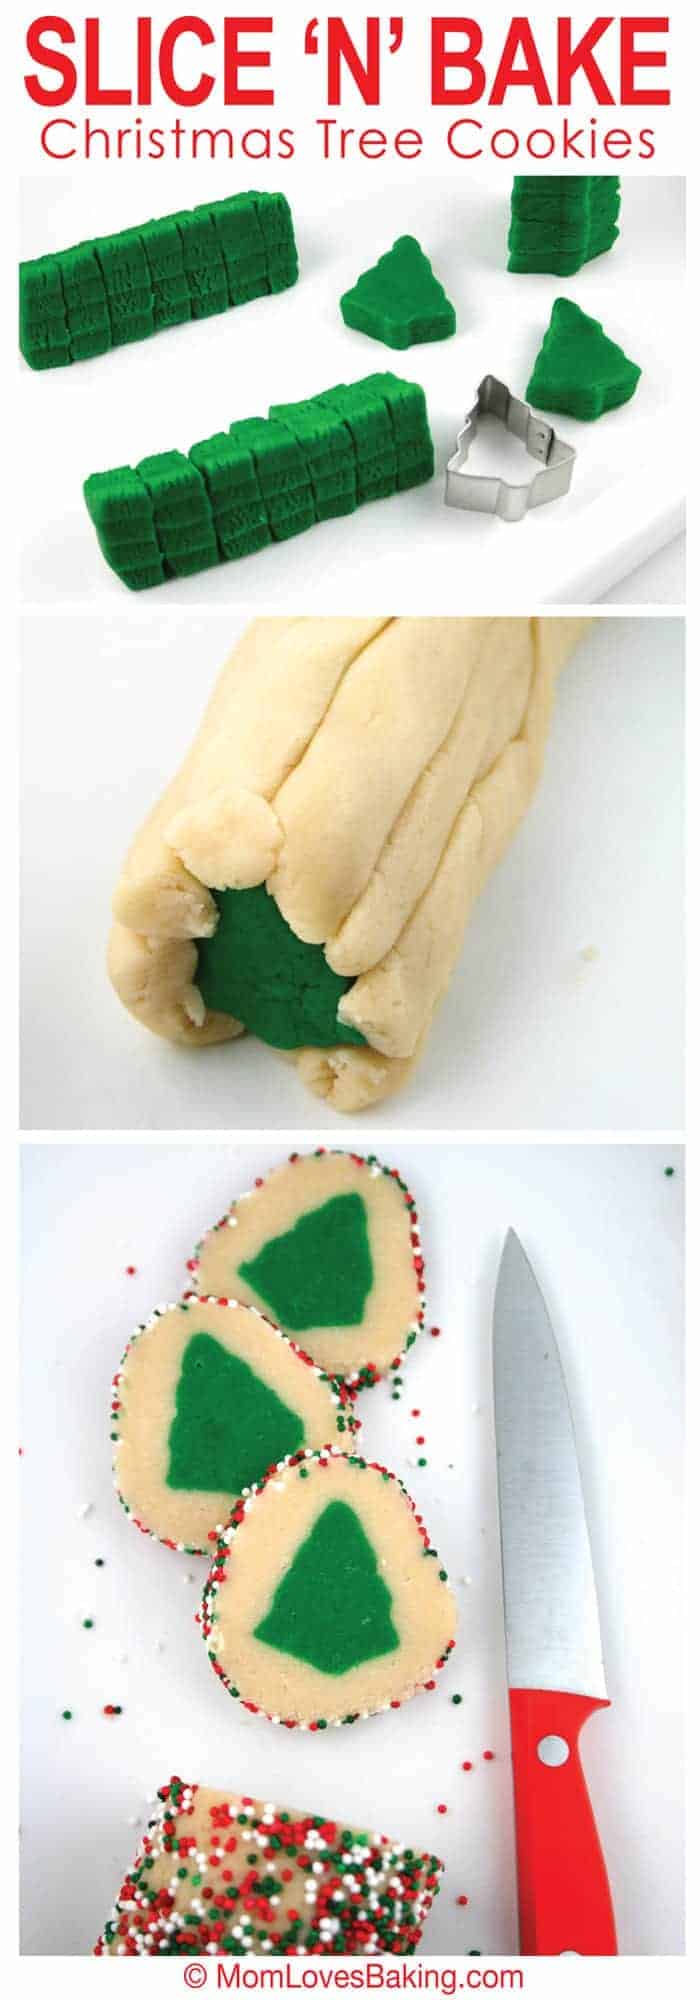 Slice and bake Christmas tree cookies